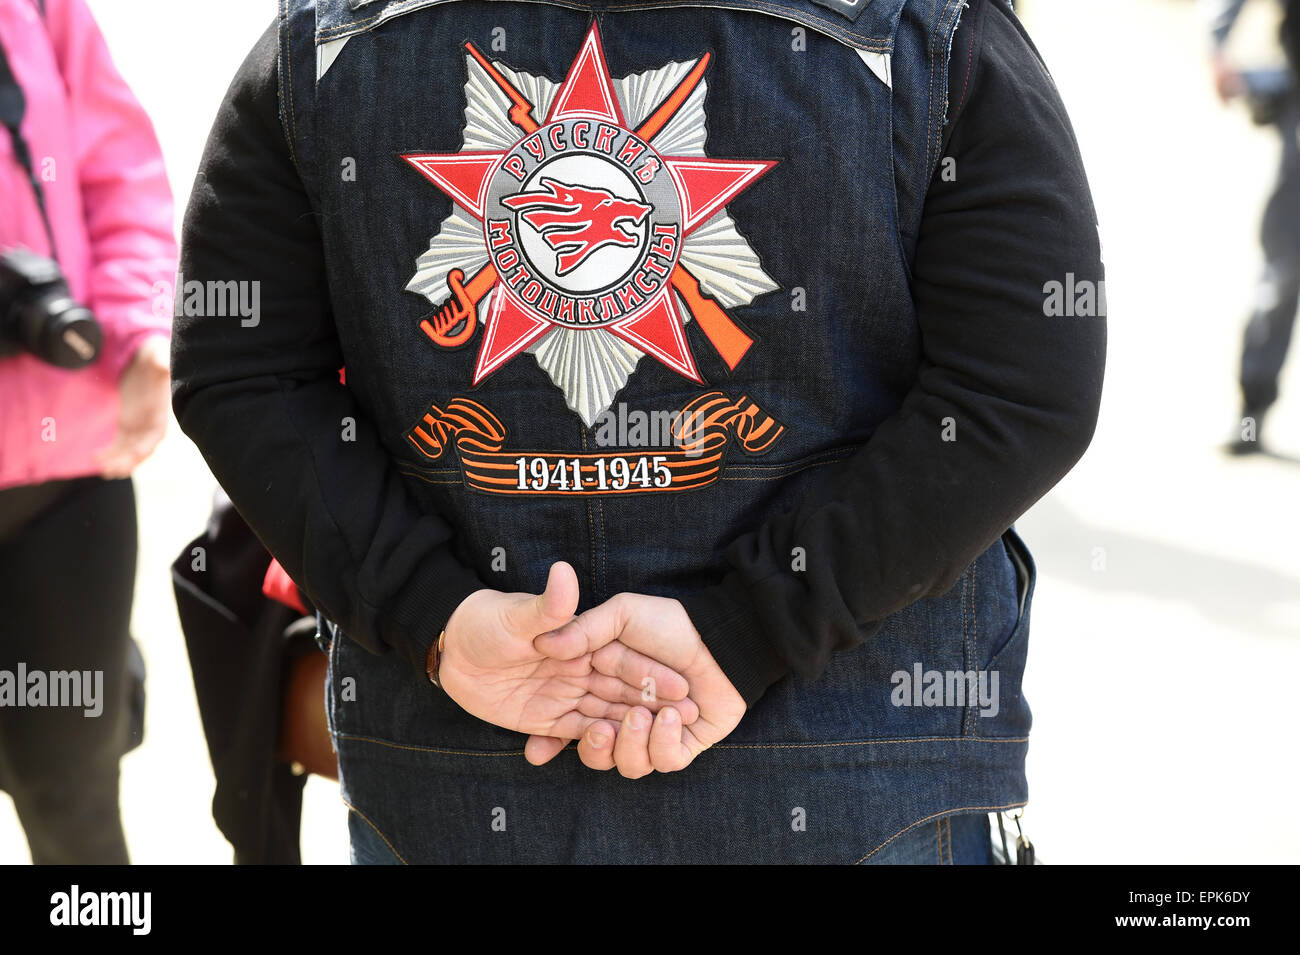 Miembro de la de moto club 'Nachtwoelfe' (lit. La noche de los lobos) lleva una chaqueta con su logotipo y cintas que constan de patrones bicolor negro y naranja con el